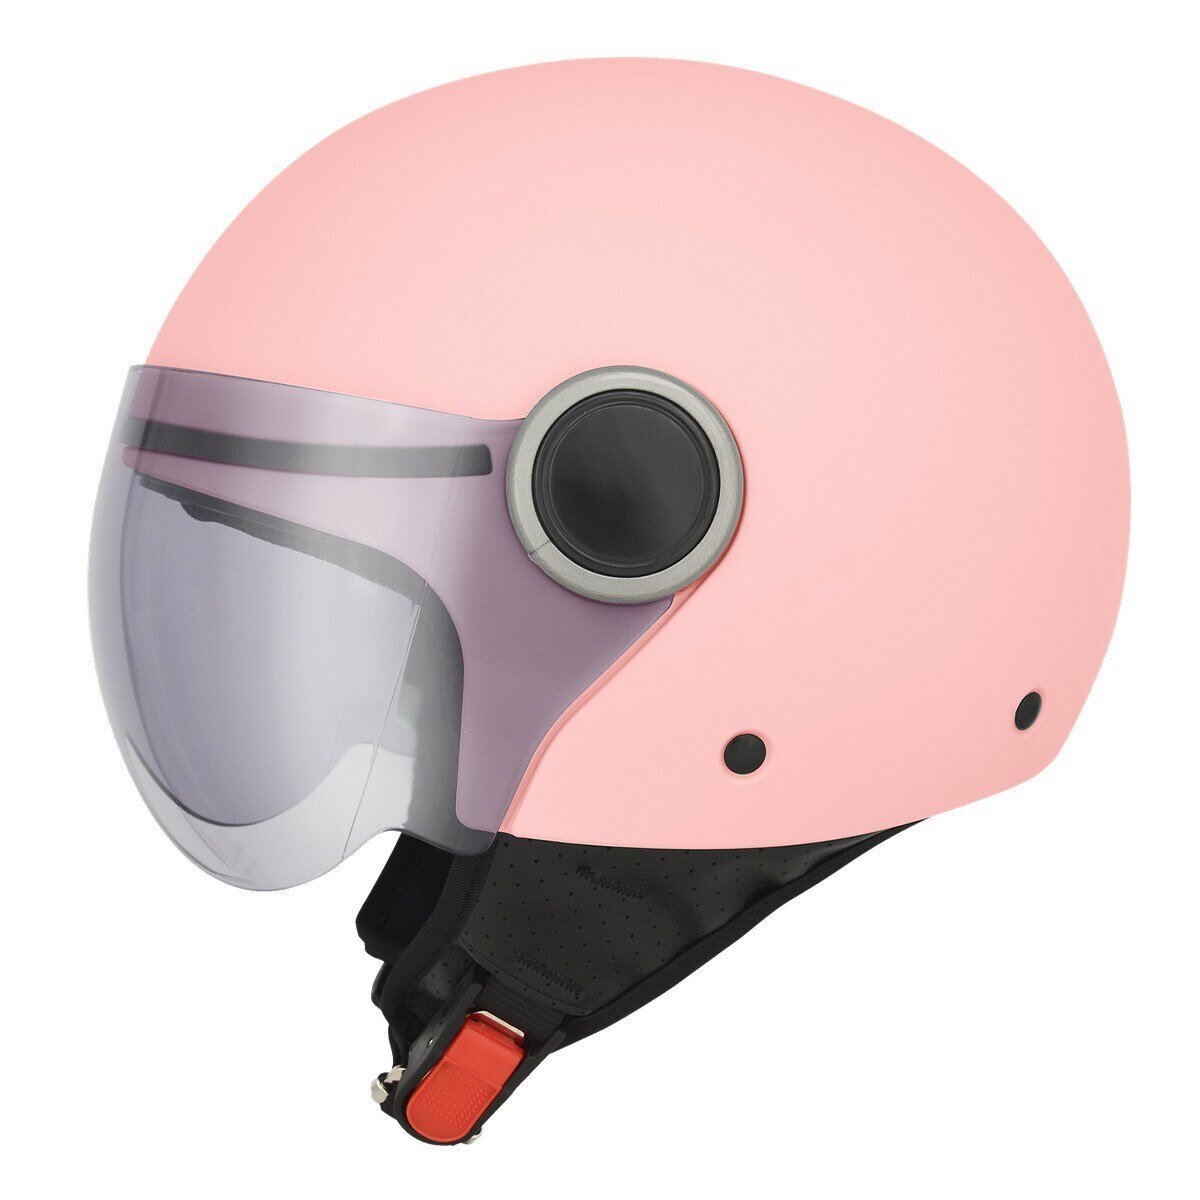 M2R 機車半露臉式防護頭盔 M505 XL 消光粉紅